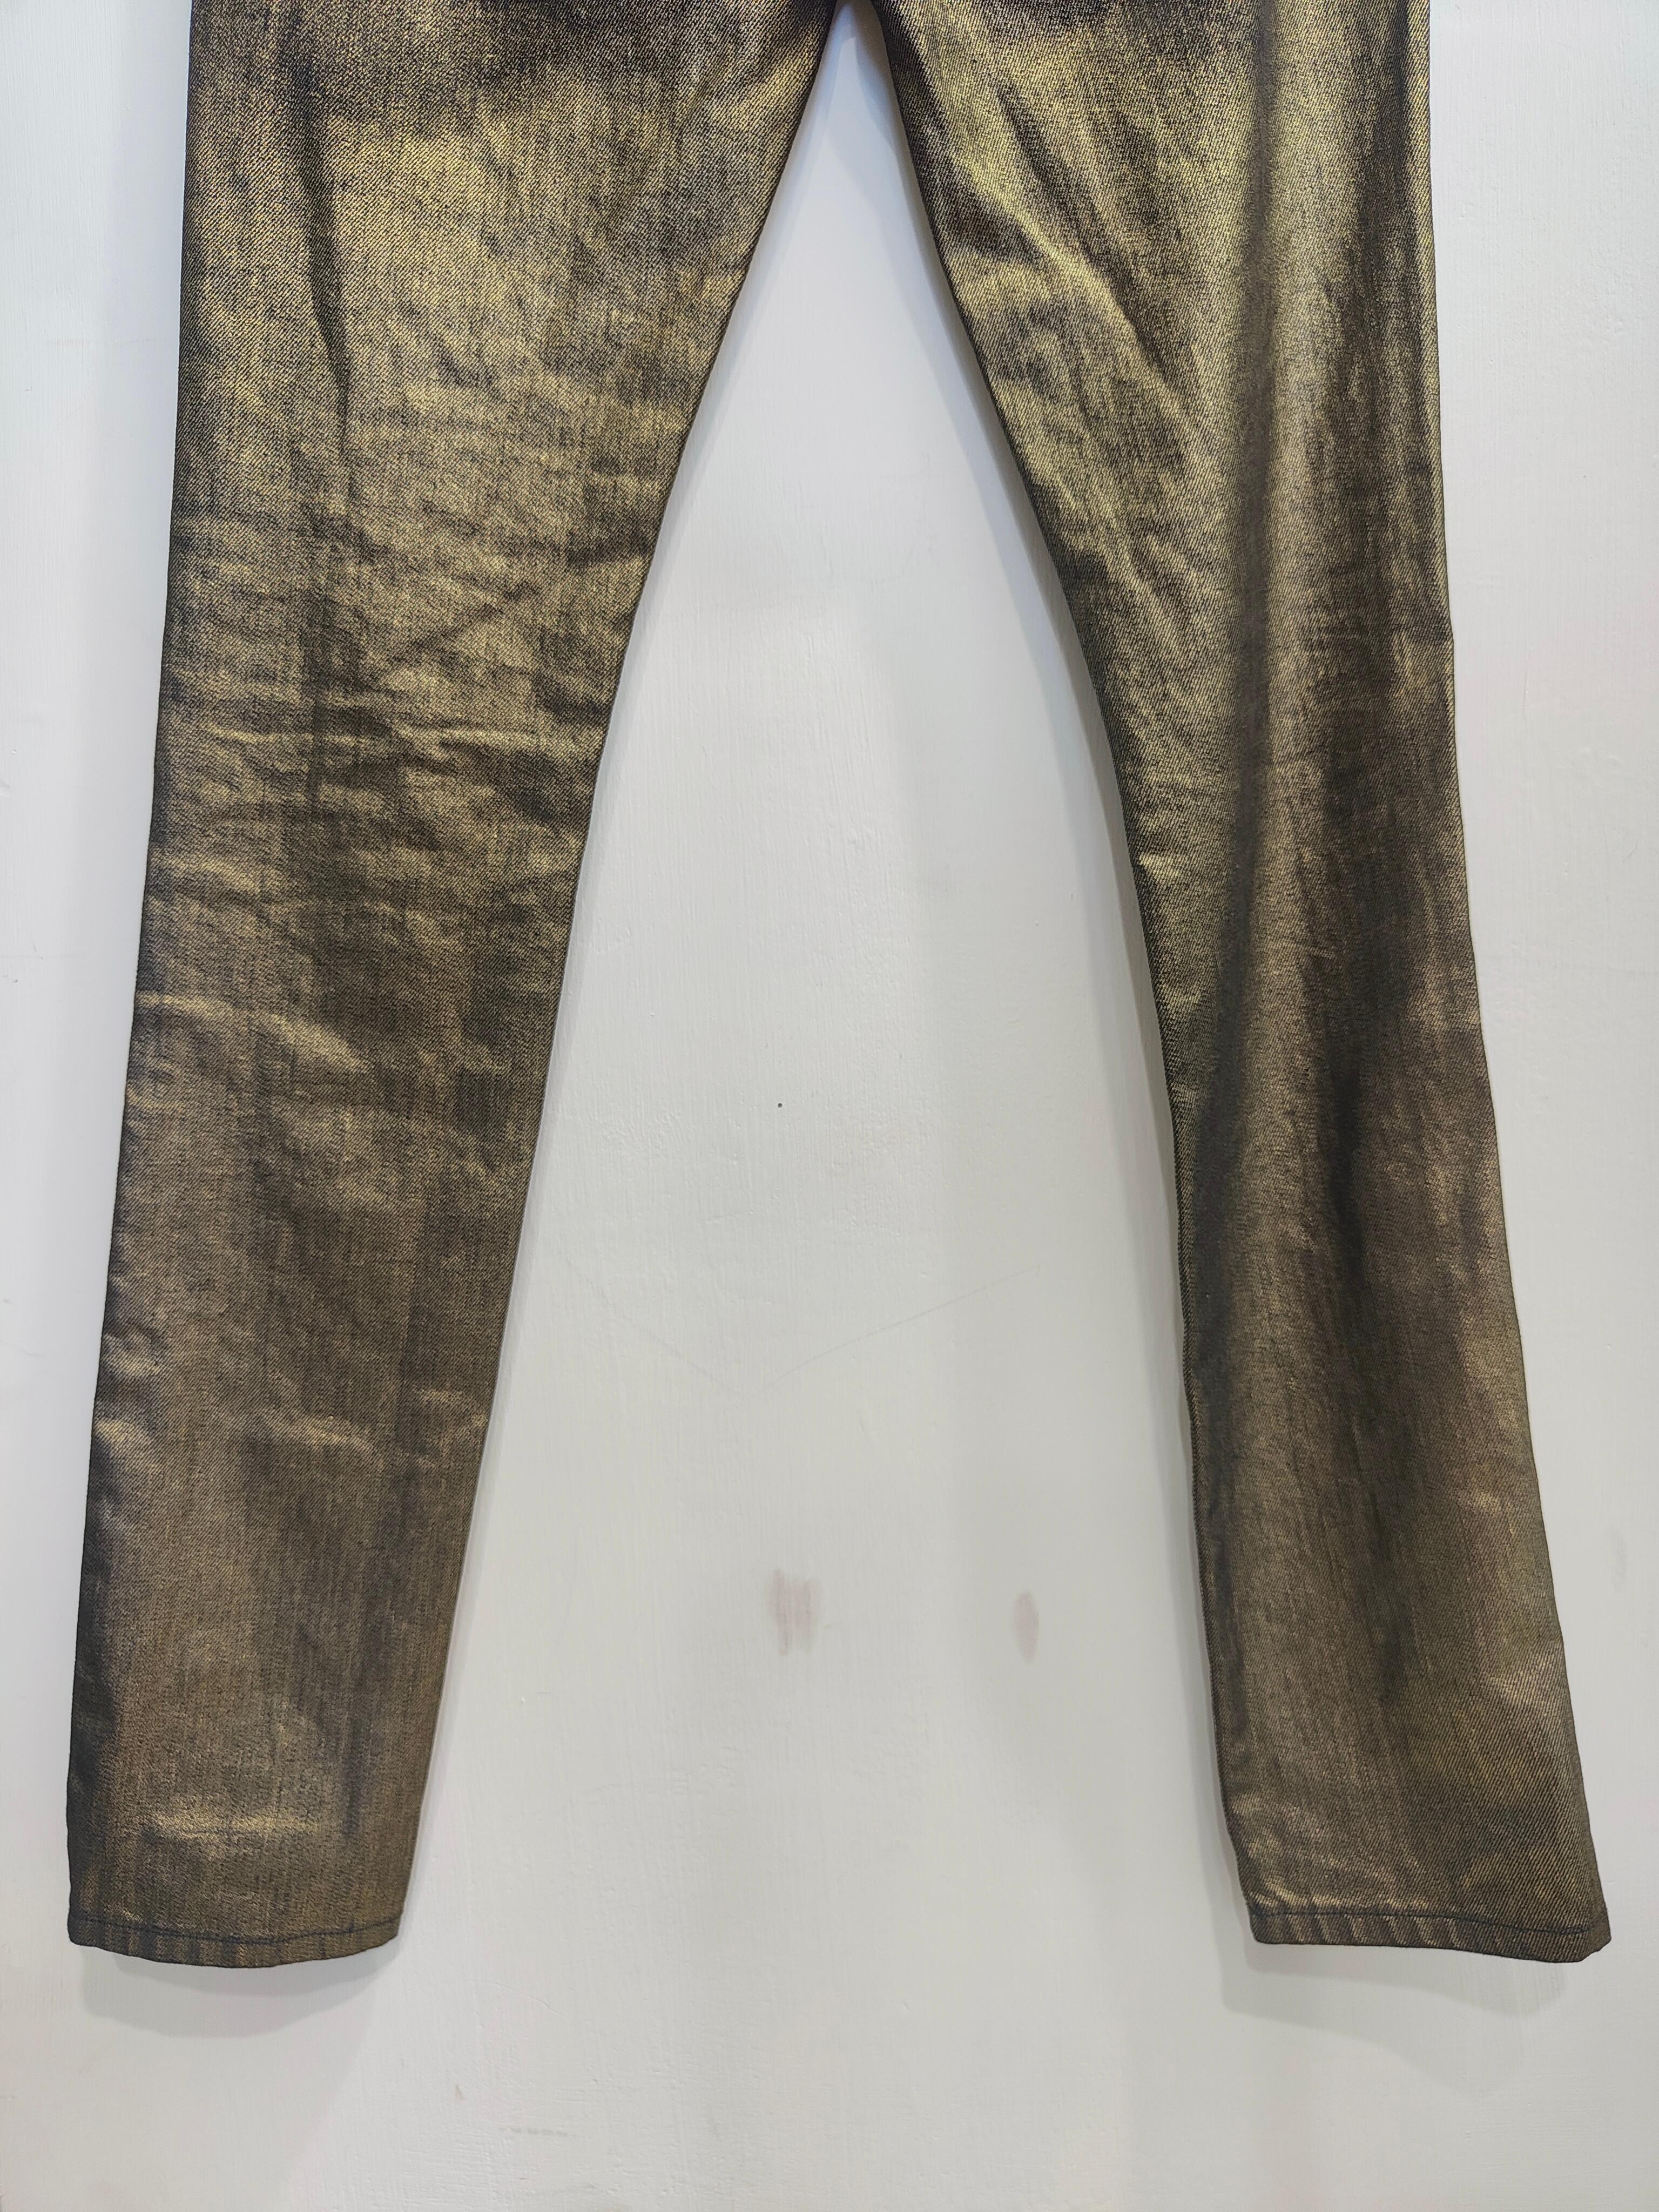 Saint Laurent gold jeans NWOT
Size 26
Measurements: 74 cm waist, 110 cm Total lenght